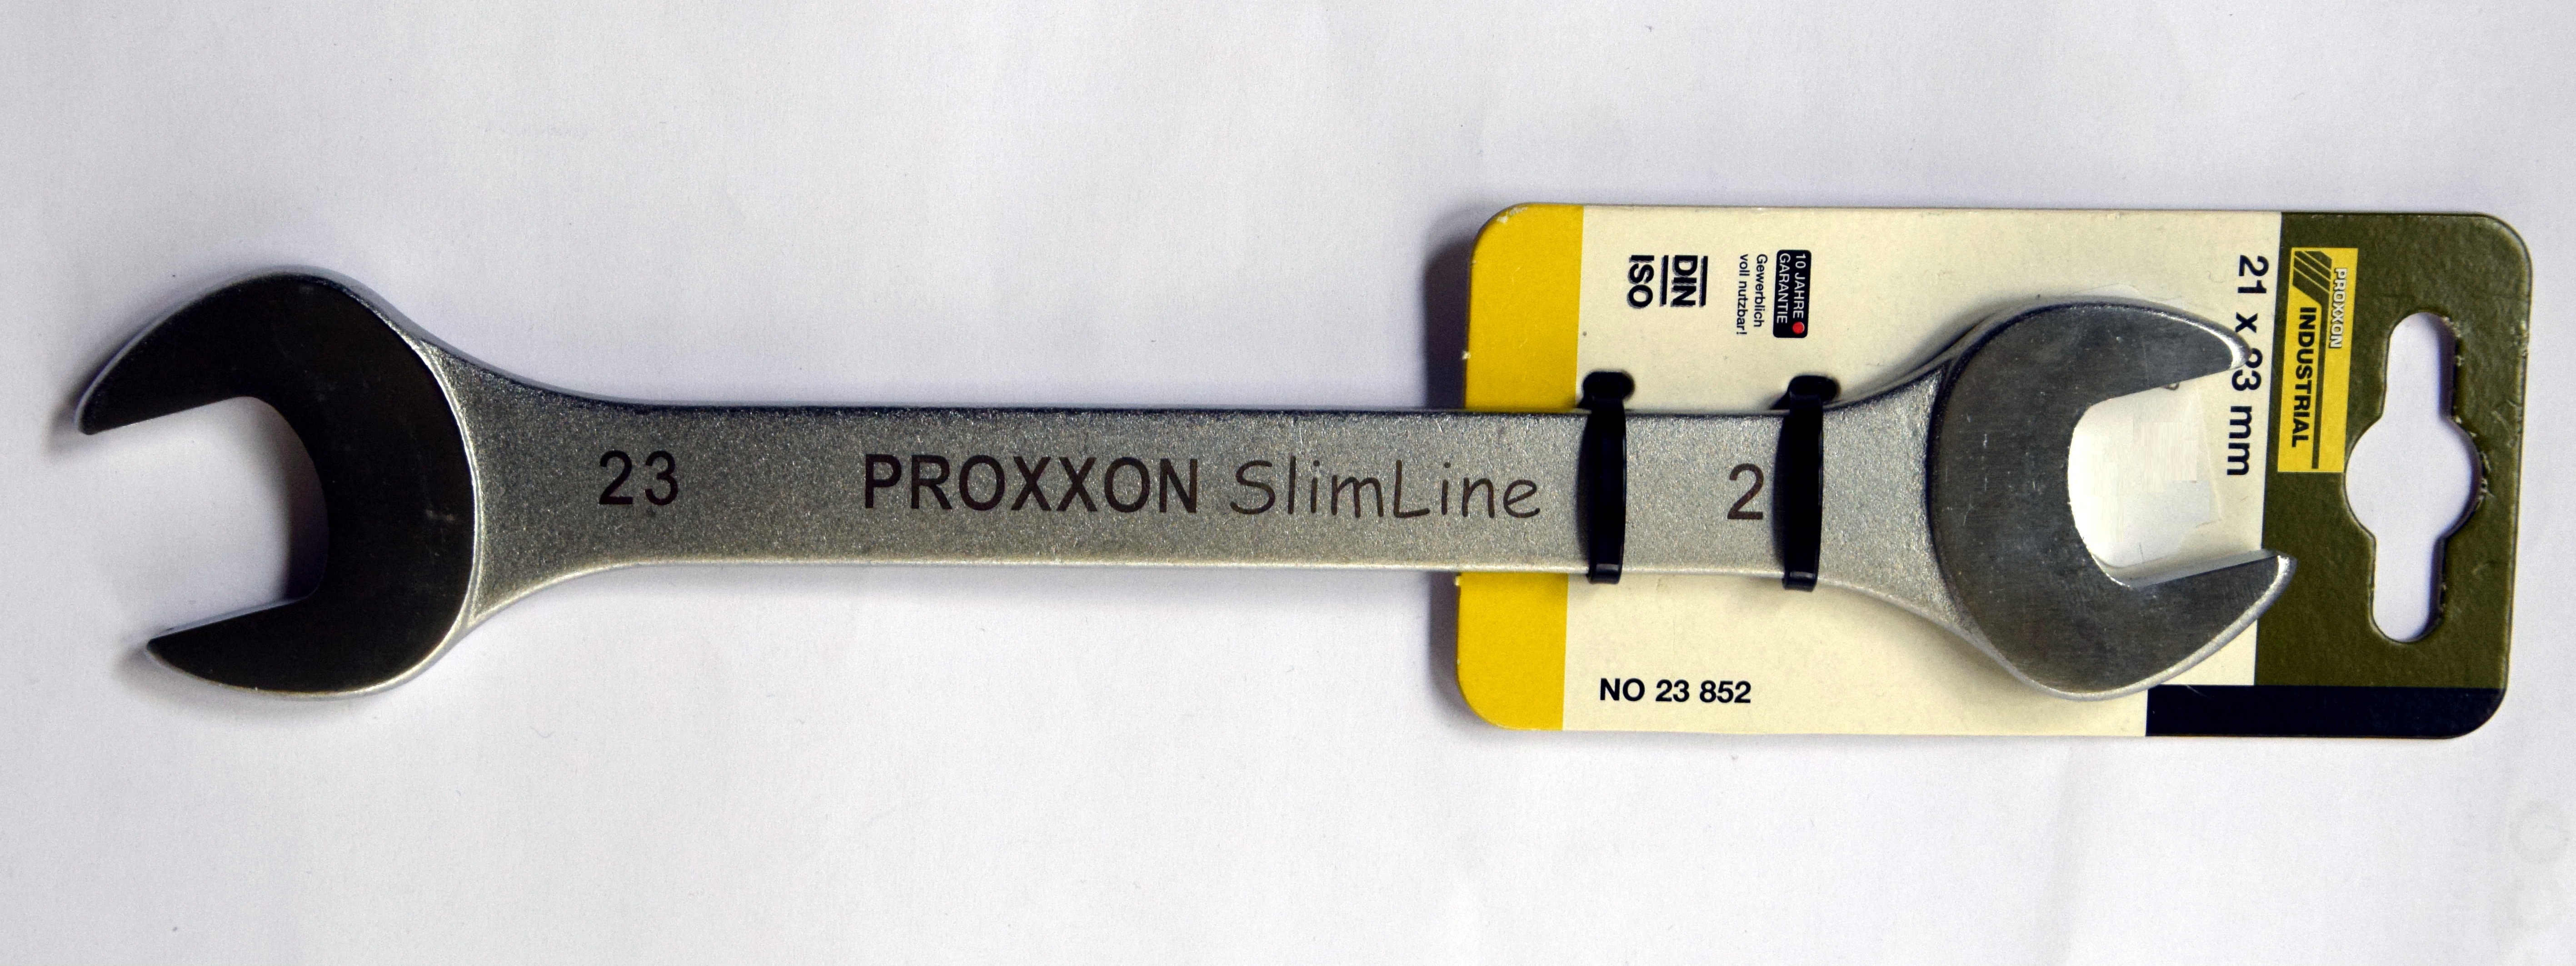 Mond Sicherheit Lehrer Proxxon Werkzeug Garantie Bef Rderung